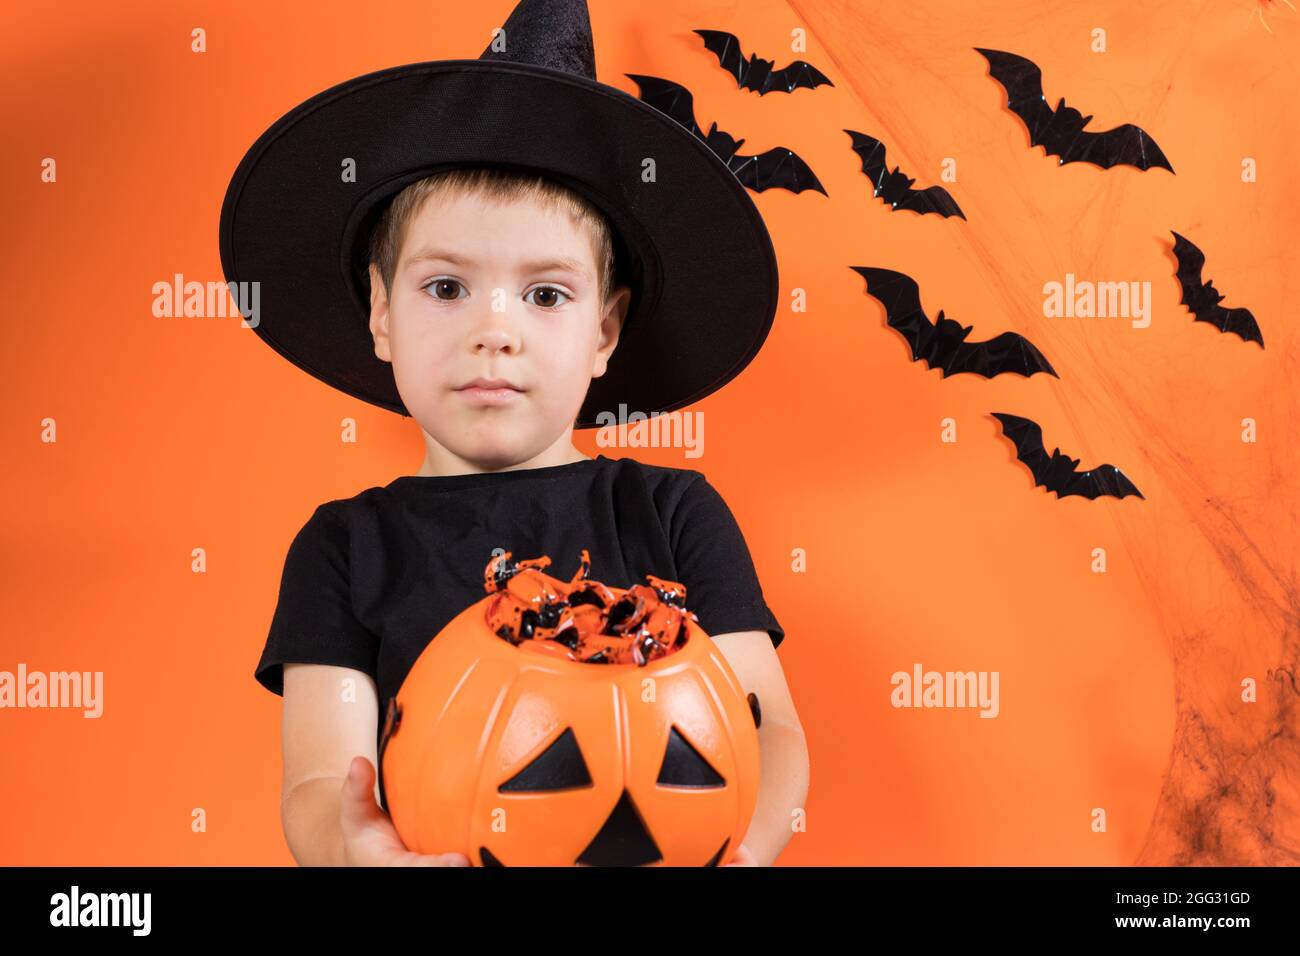 Halloween Kind. Ein Vorschuljunge in einem Hexenkostüm hält einen Kürbis mit Süßigkeiten auf einem orangen Hintergrund. Rabatte und Verkäufe für den Urlaub Stockfoto